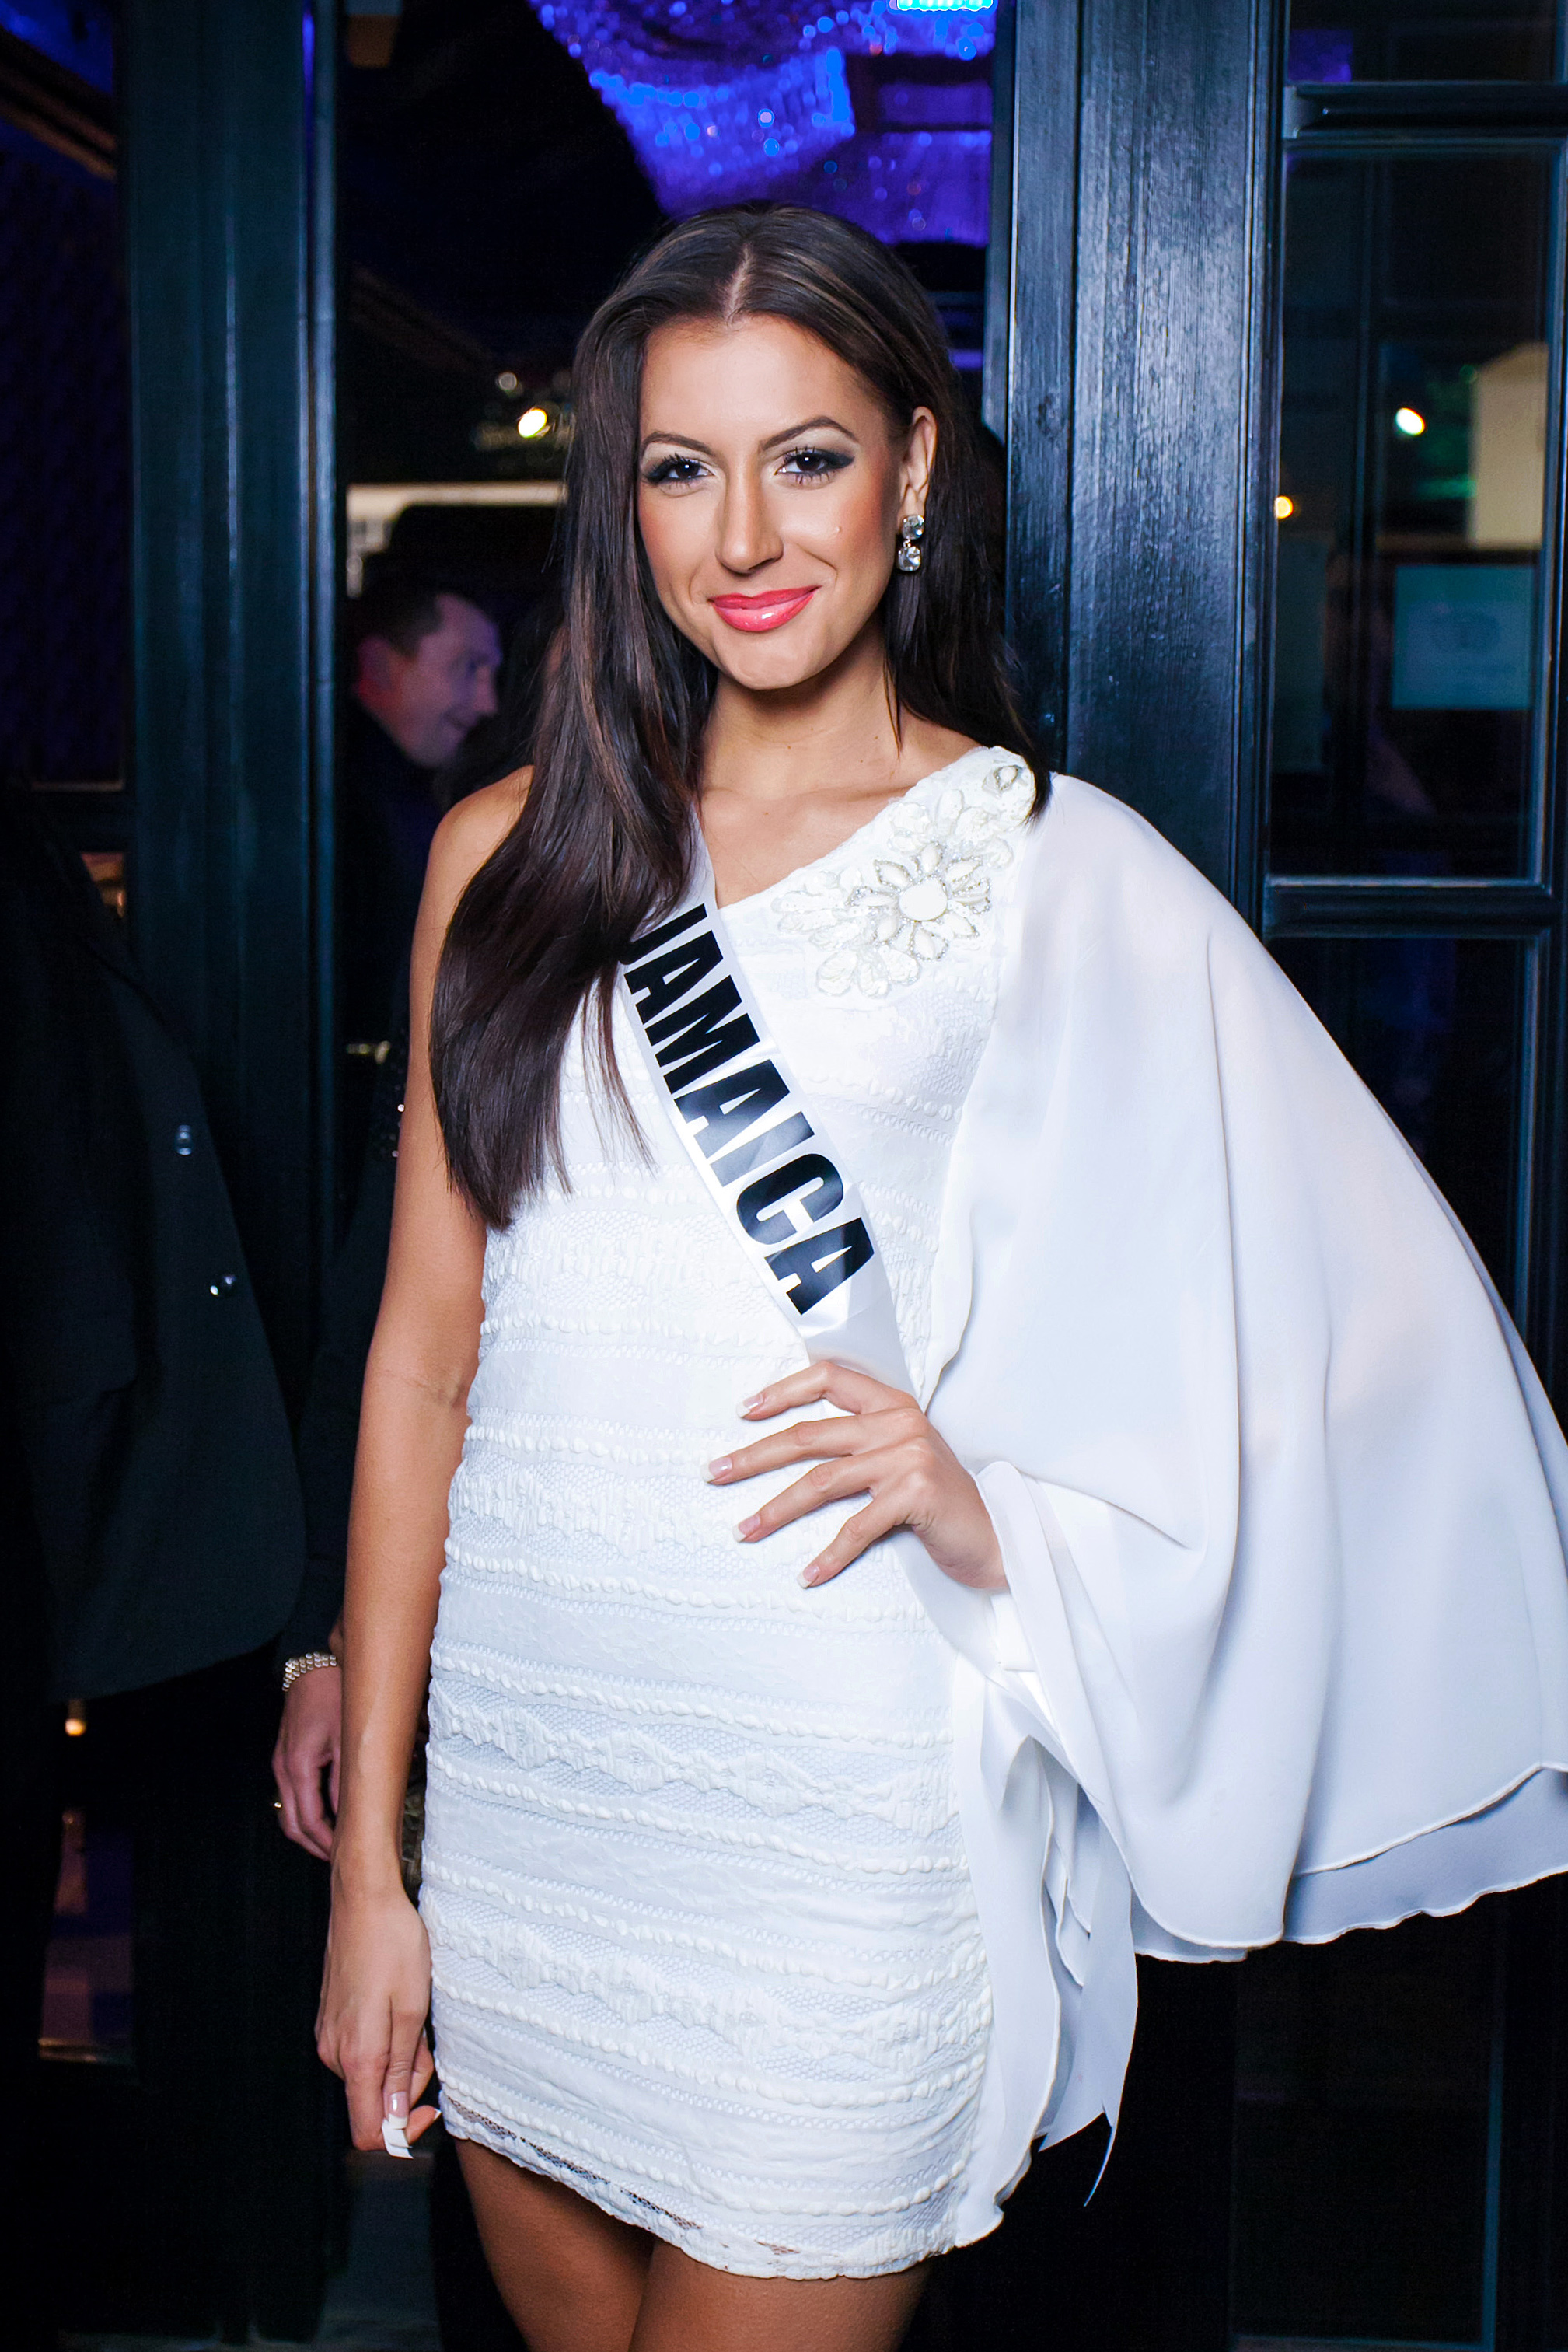 Miss Universe 2011 - Wikipedia